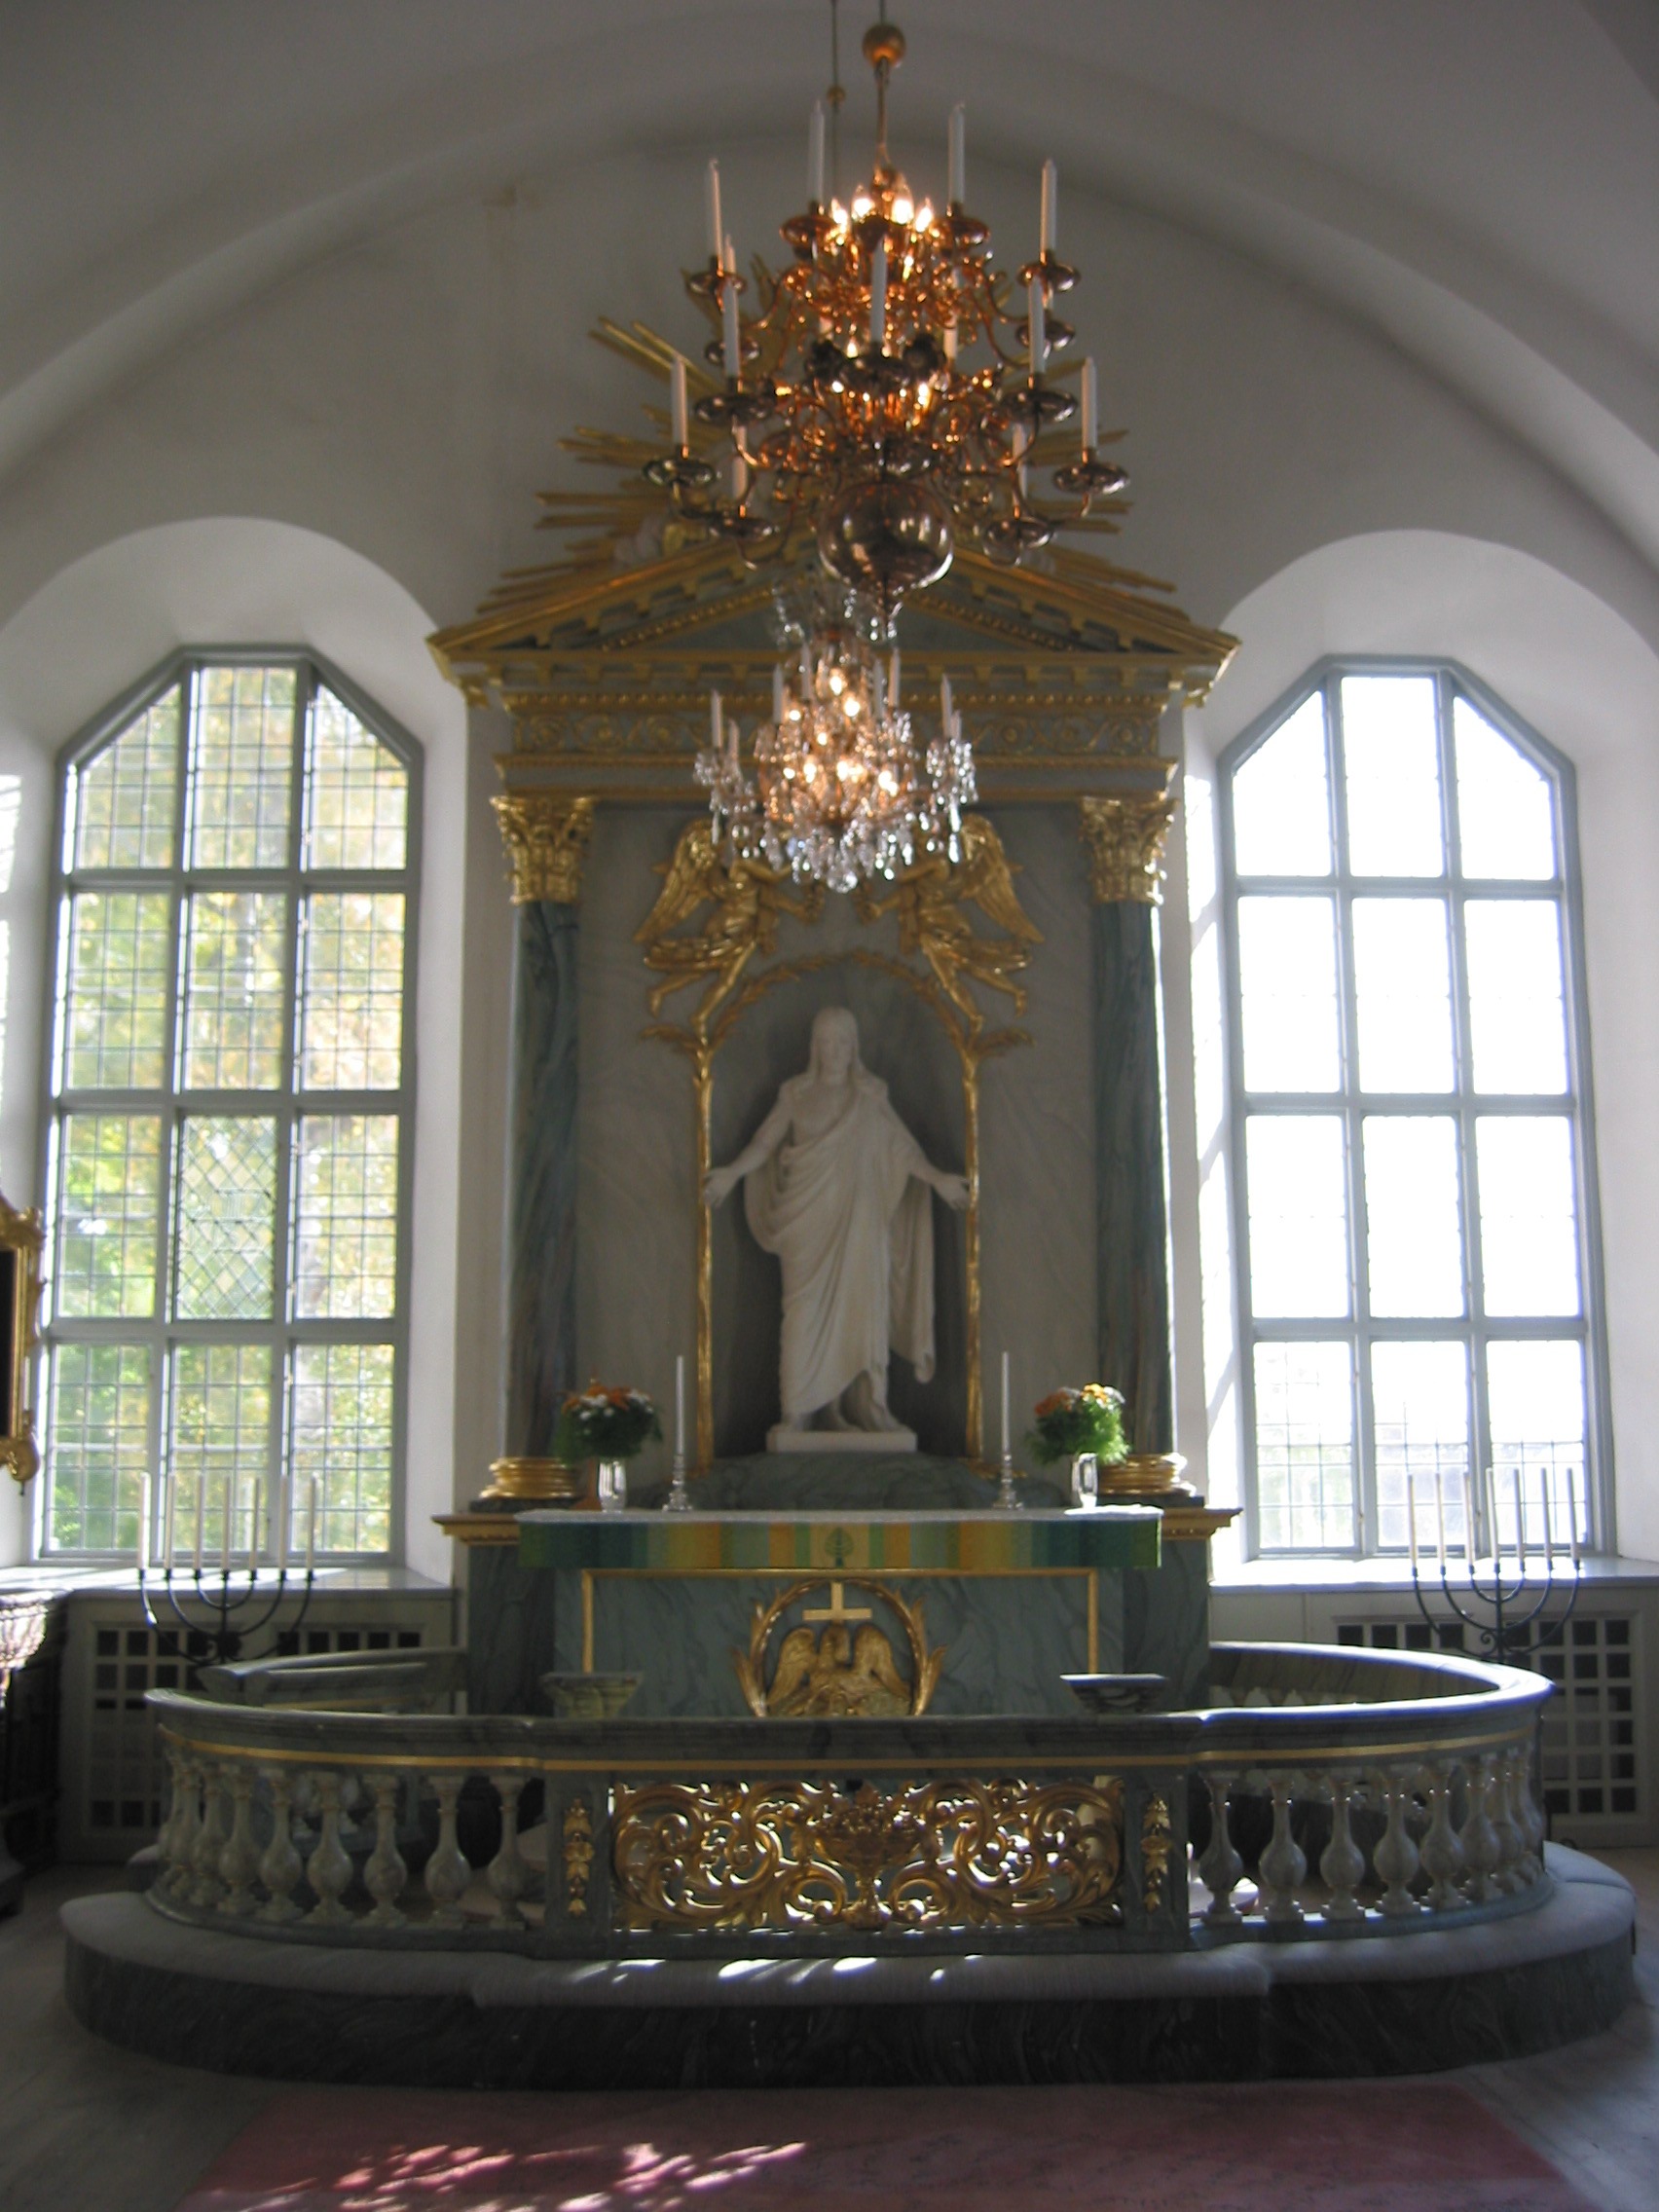 Tuna kyrka, interiör, kyrkorummet, koret med altaruppsats. 